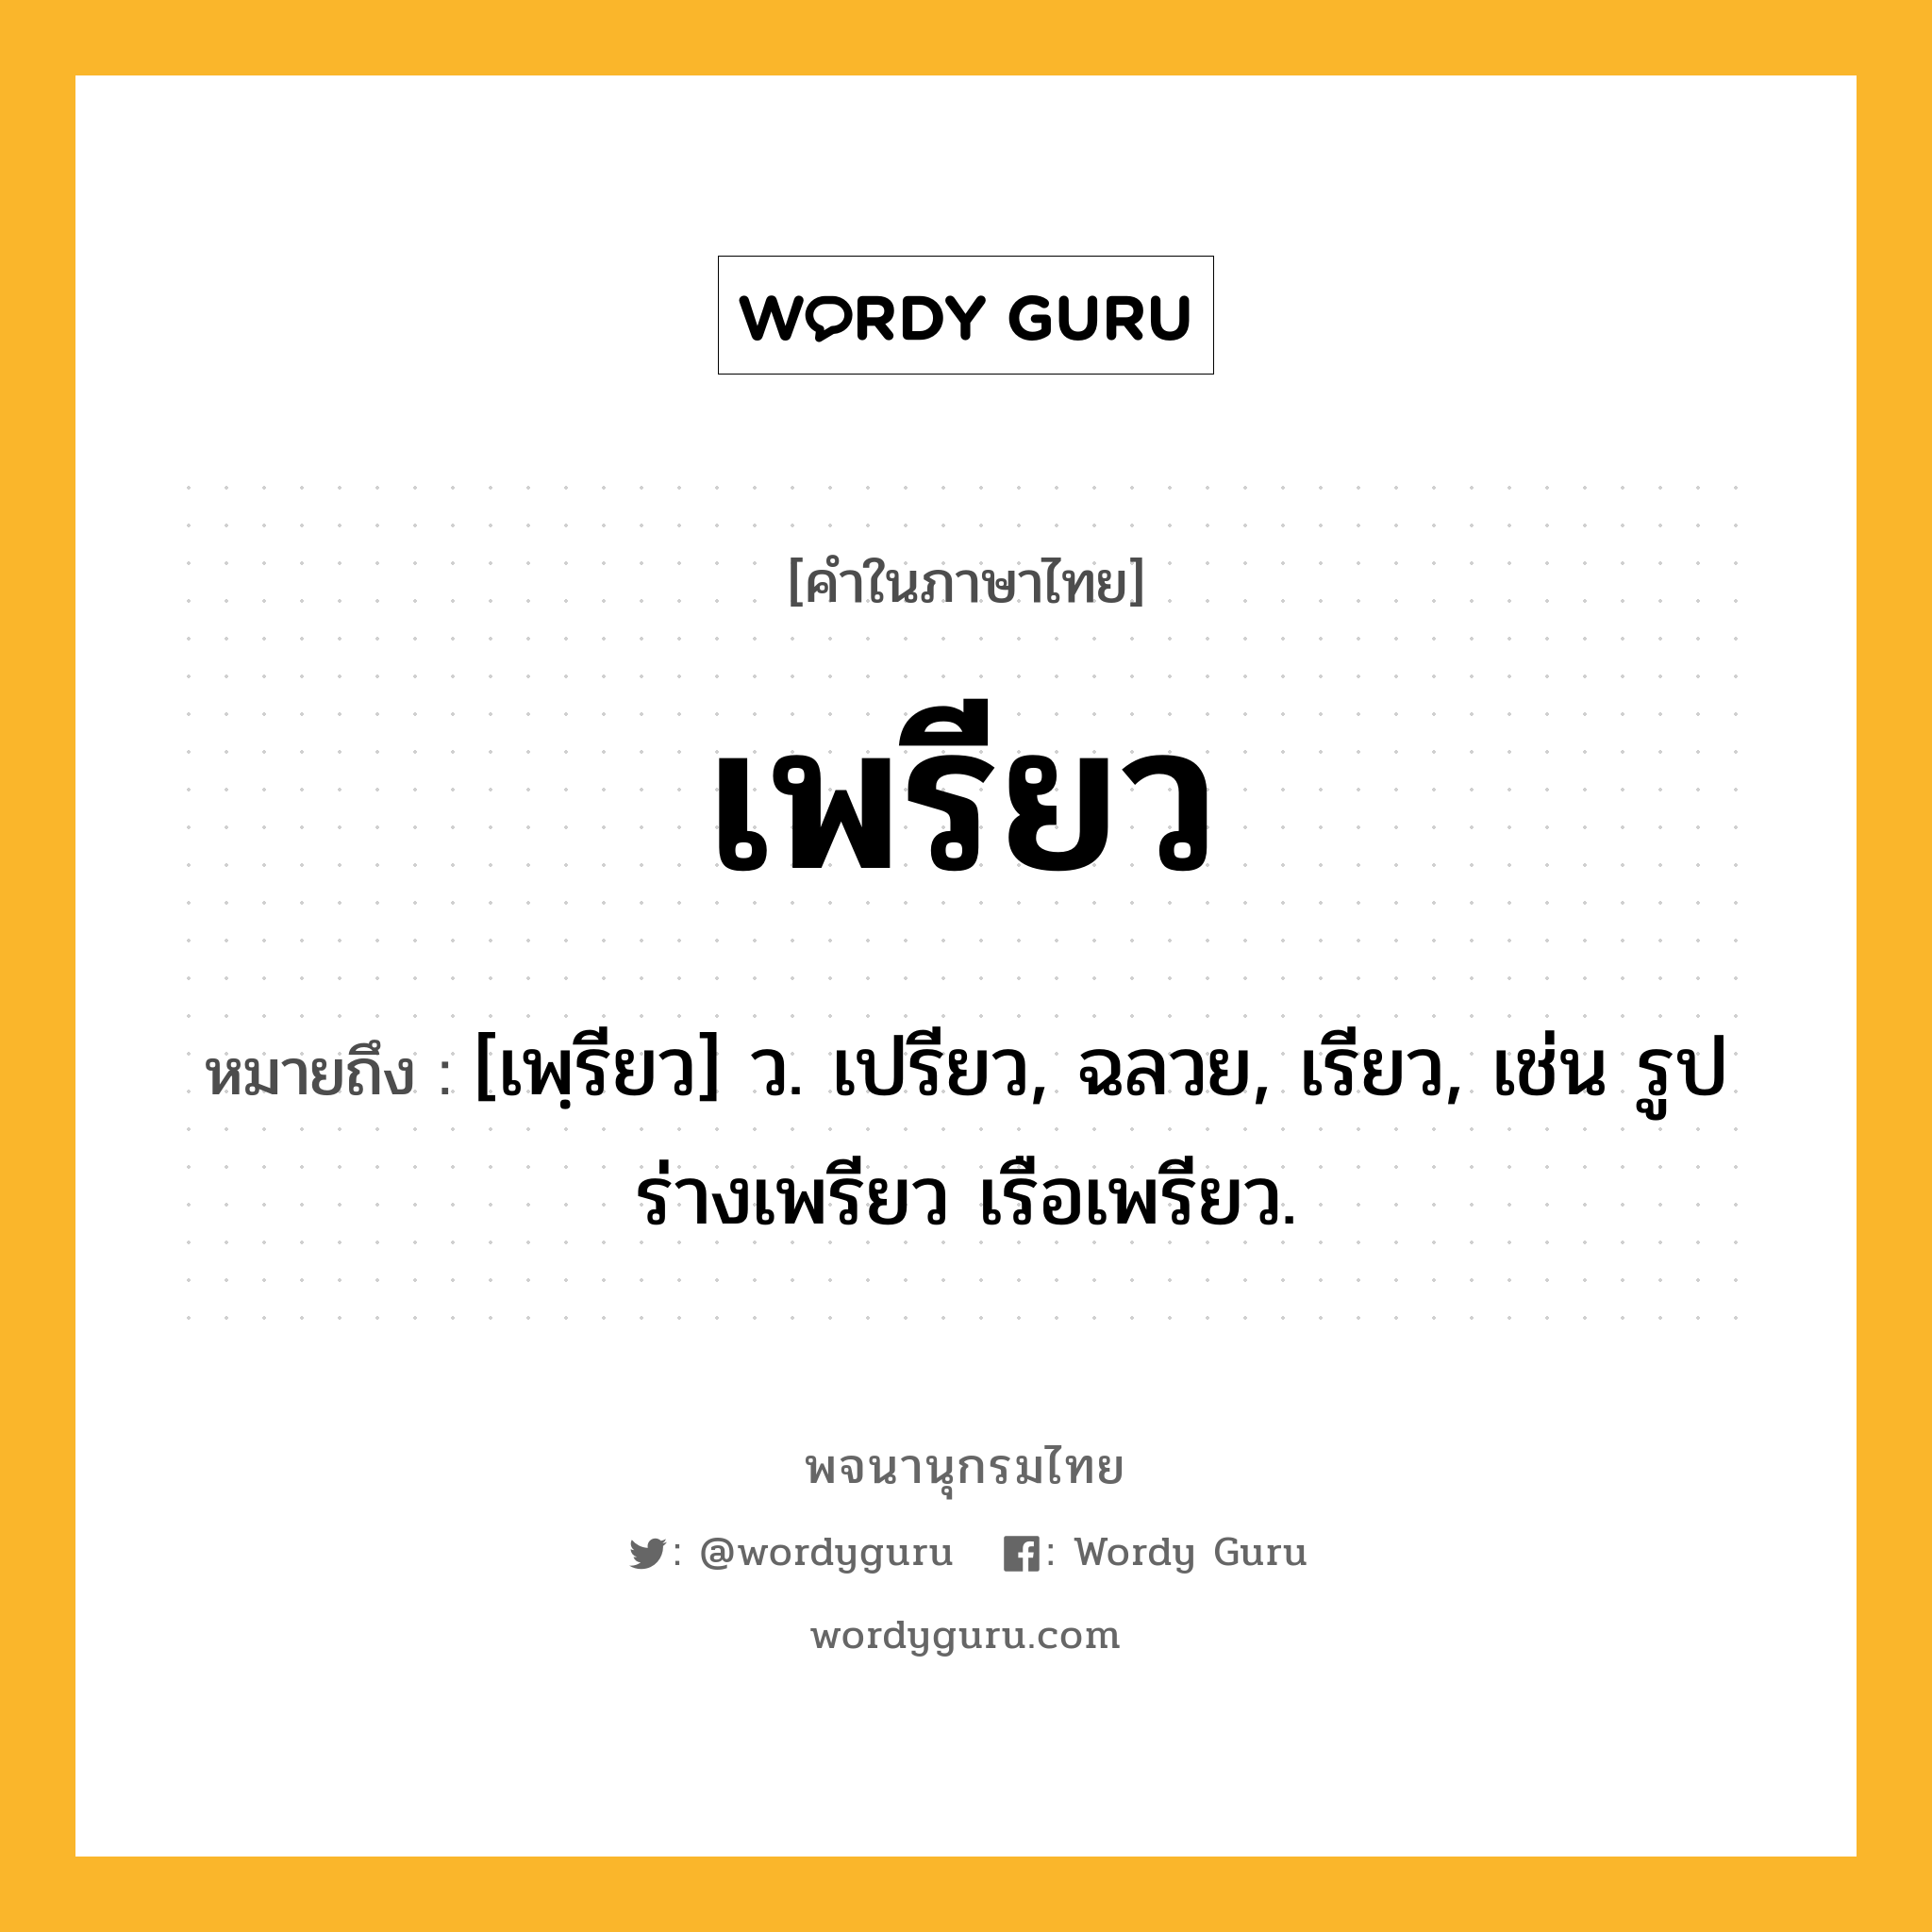 เพรียว ความหมาย หมายถึงอะไร?, คำในภาษาไทย เพรียว หมายถึง [เพฺรียว] ว. เปรียว, ฉลวย, เรียว, เช่น รูปร่างเพรียว เรือเพรียว.